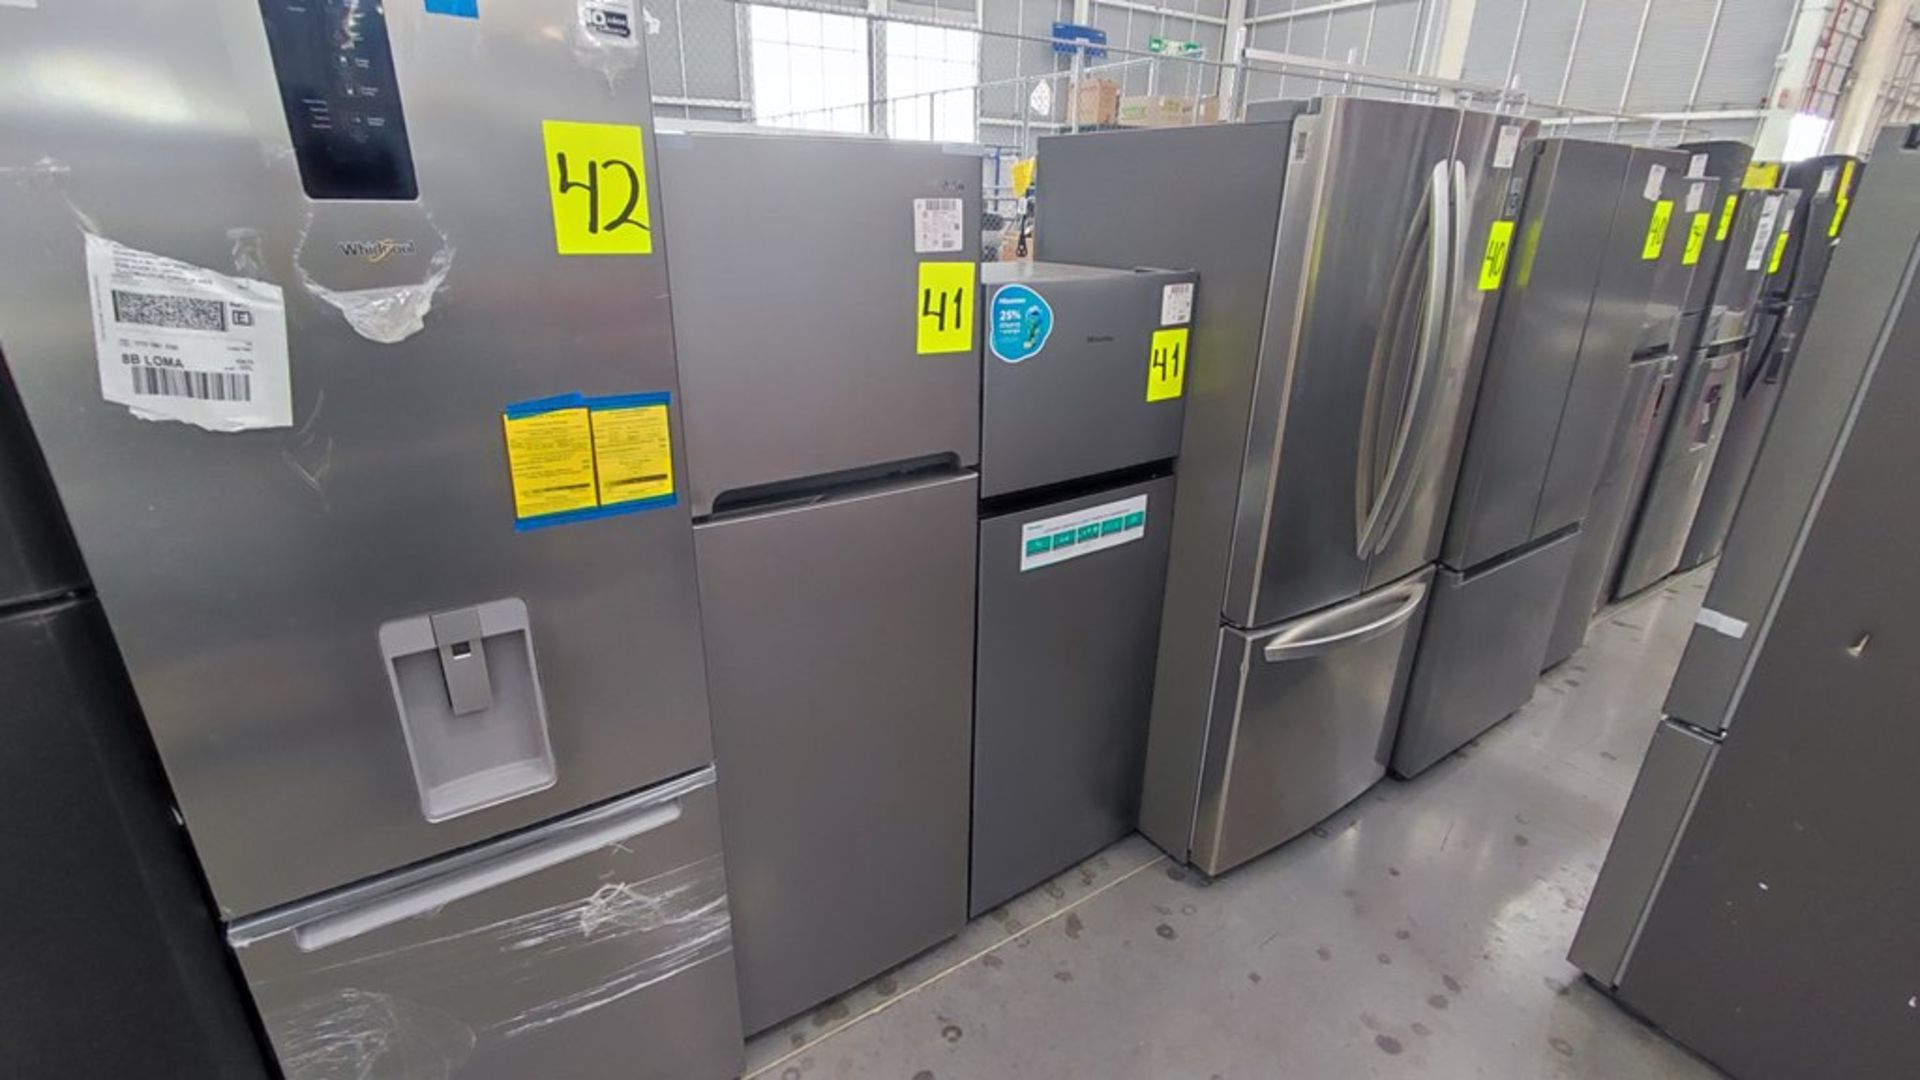 Lote de 2 Refrigeradores contiene: 1 Refrigerador Marca Hisense Modelo BCYNY, No de serie 1B0205Z00 - Image 8 of 11